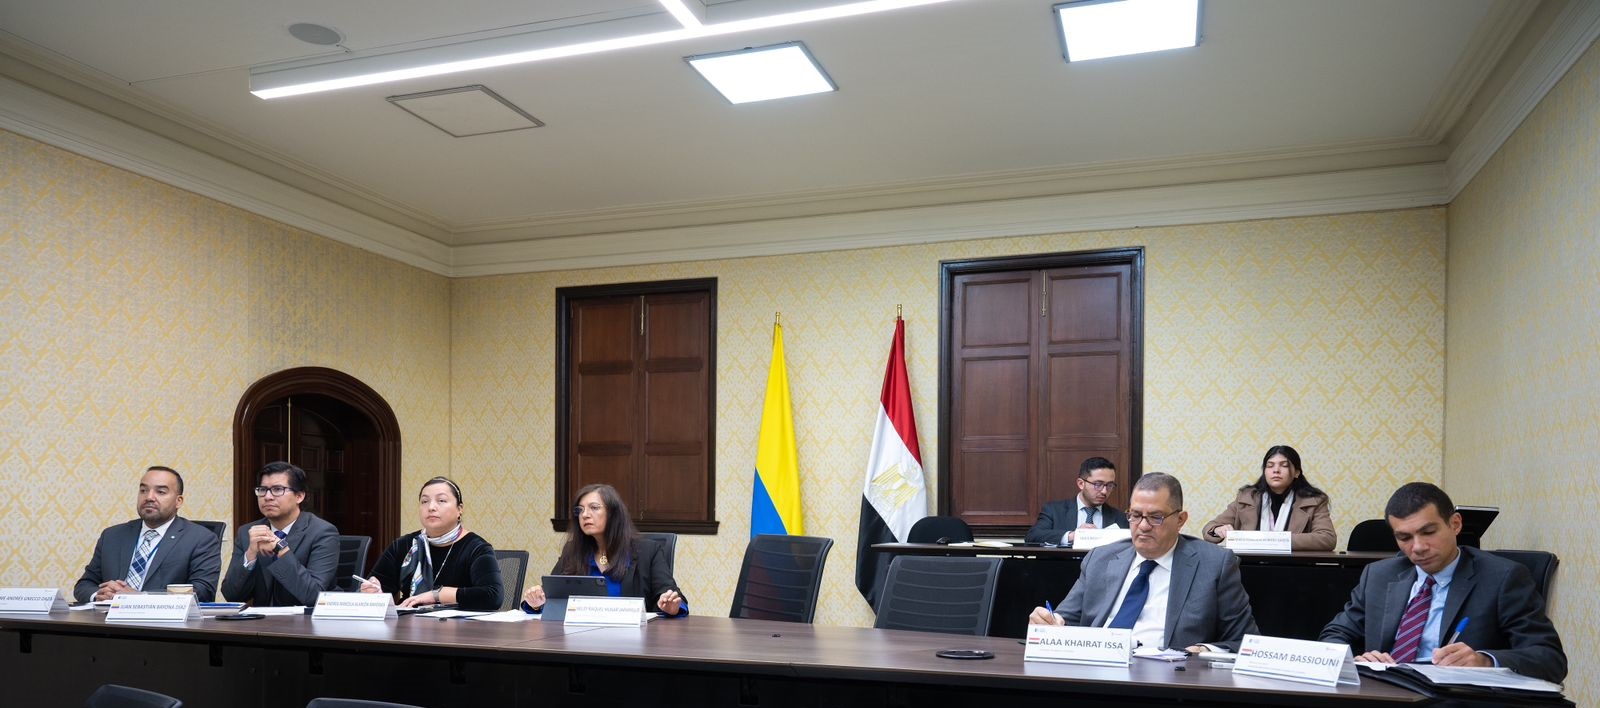 Colombia y Egipto realizaron la Tercera Reunión de Consultas Políticas en la Cancillería